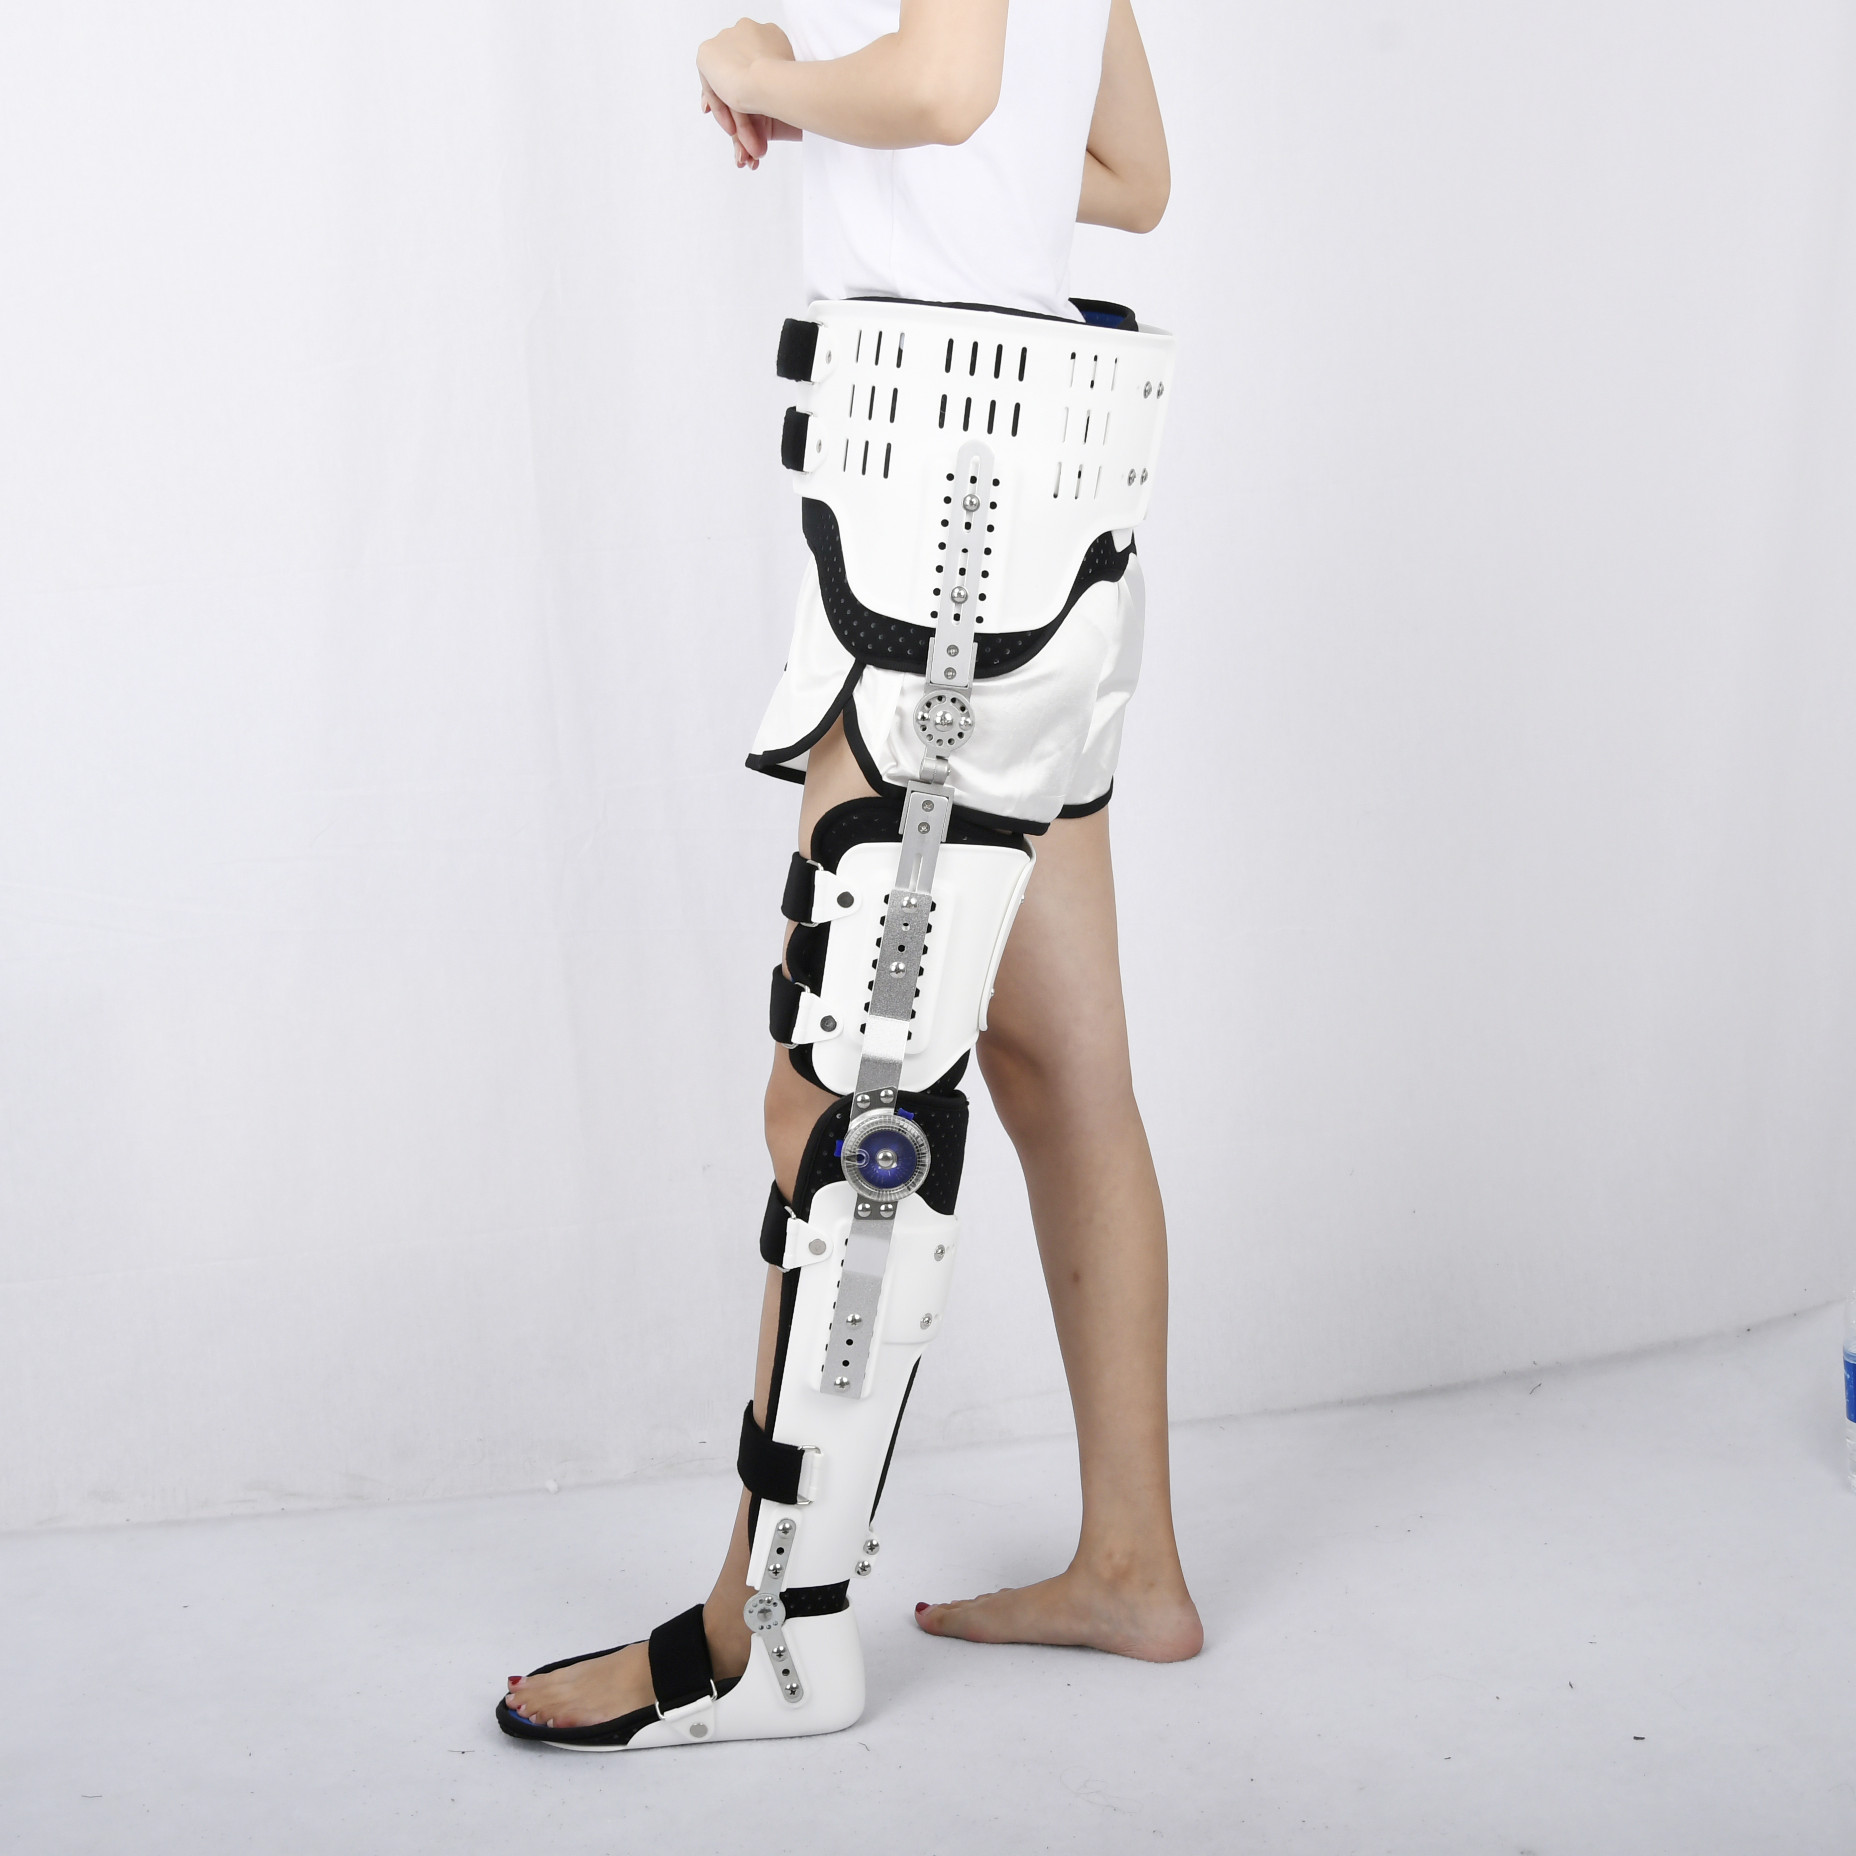 康奇医疗厂家髋关节截瘫行走固定支具股骨骨折护具胯部术后可调髋膝踝足护具4